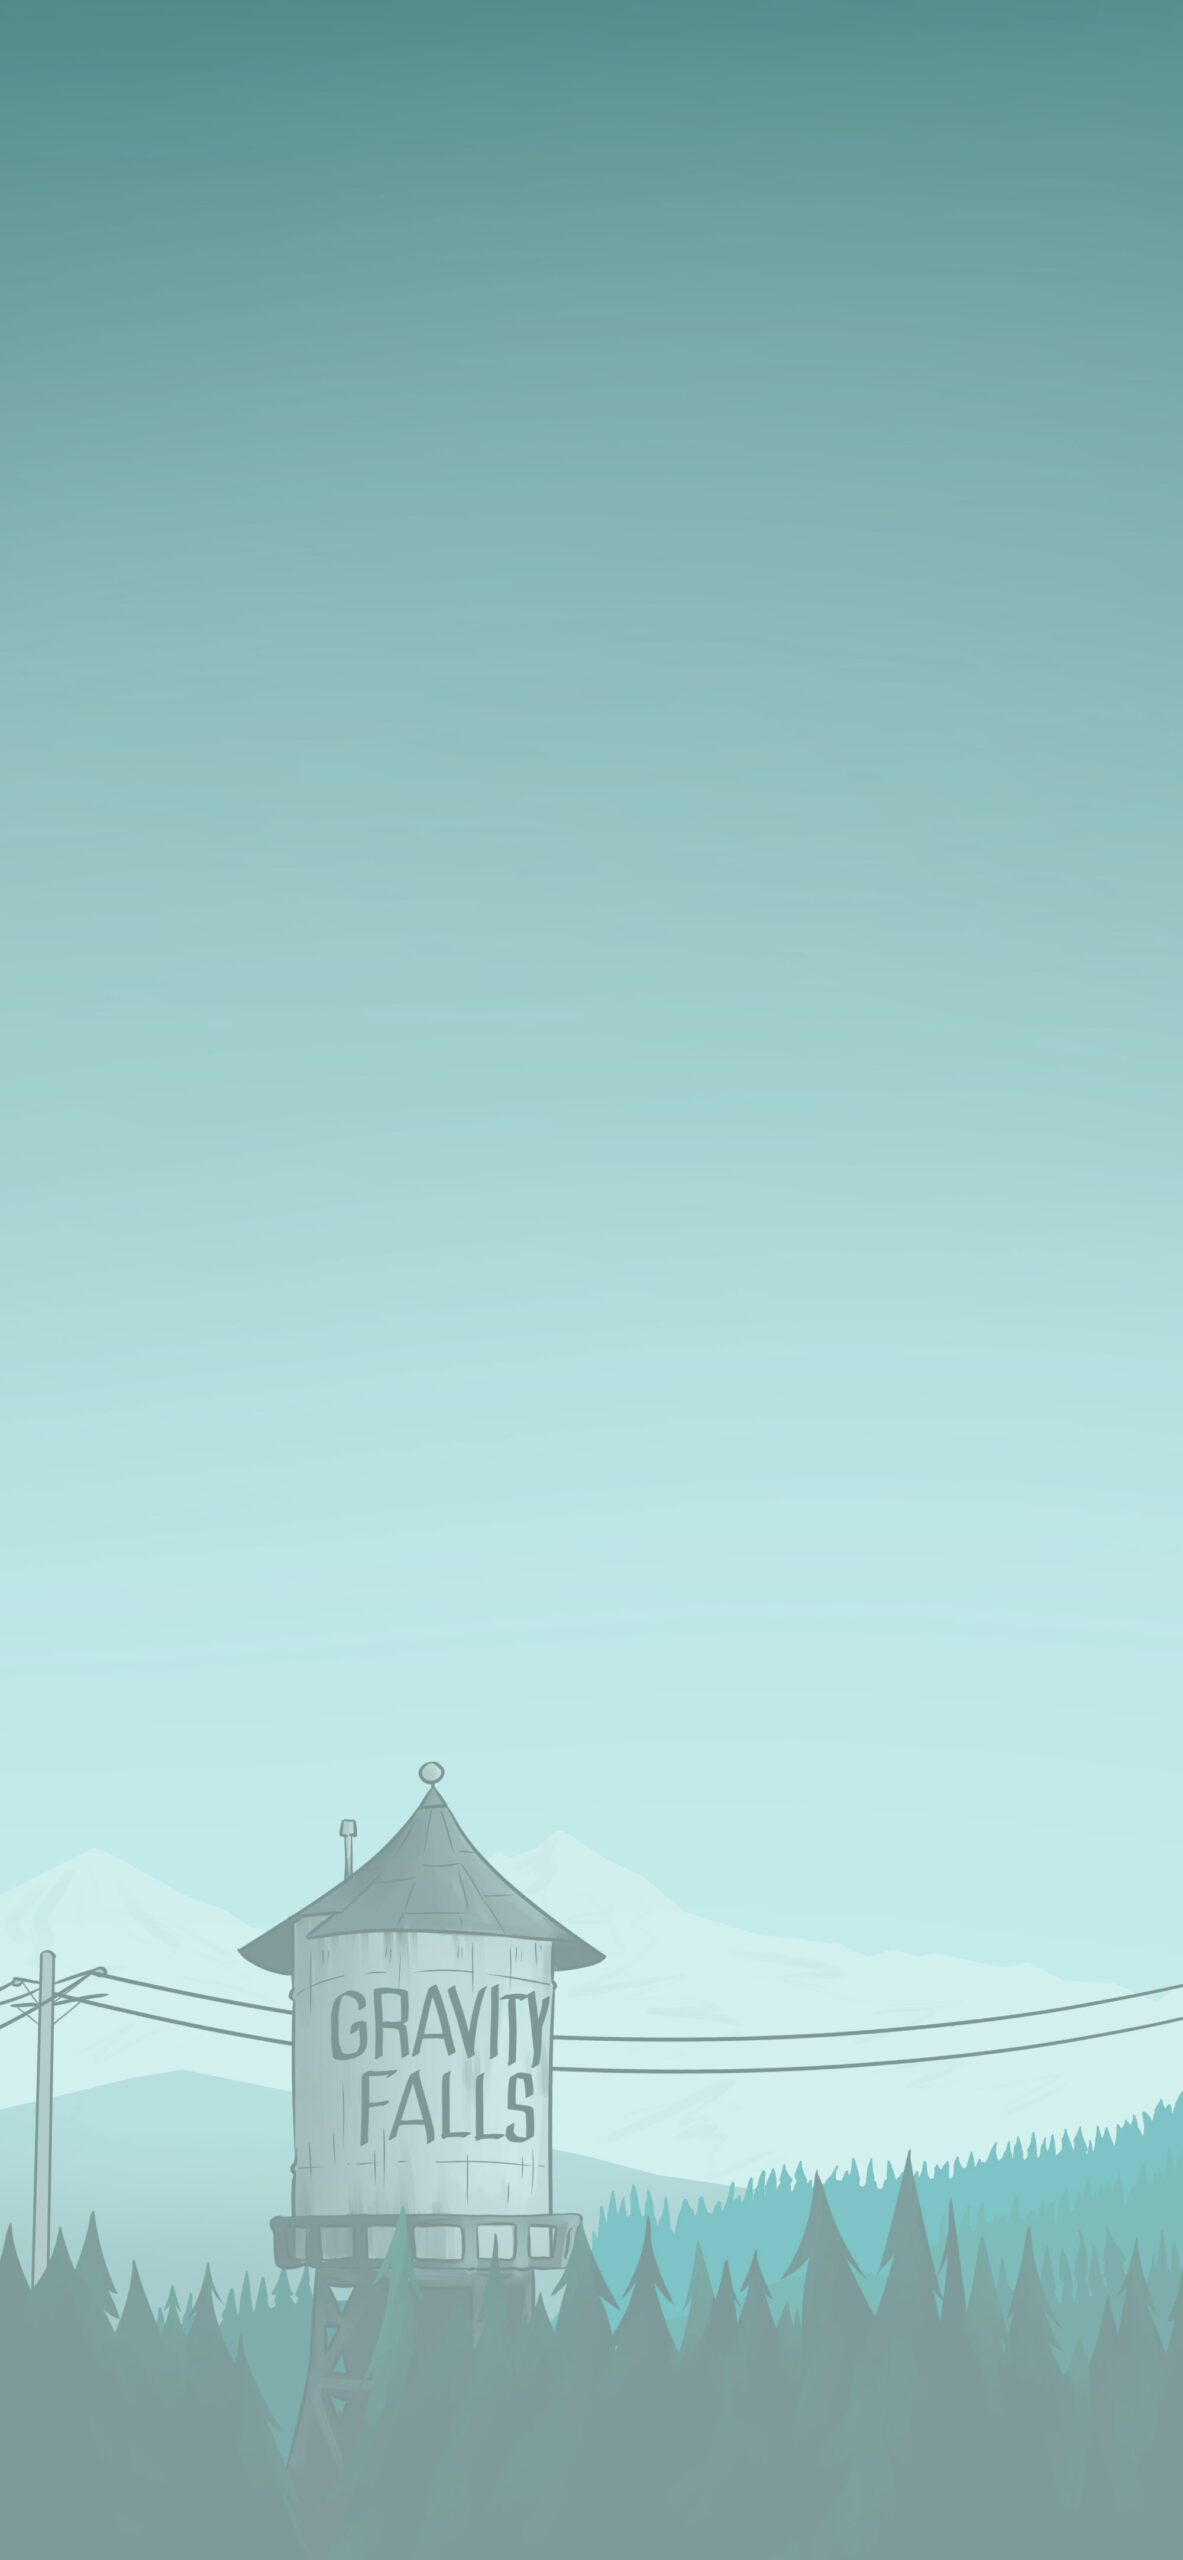 Gravity Falls Water Tower Wallpapers - Gravity Falls Wallpaper for Phone